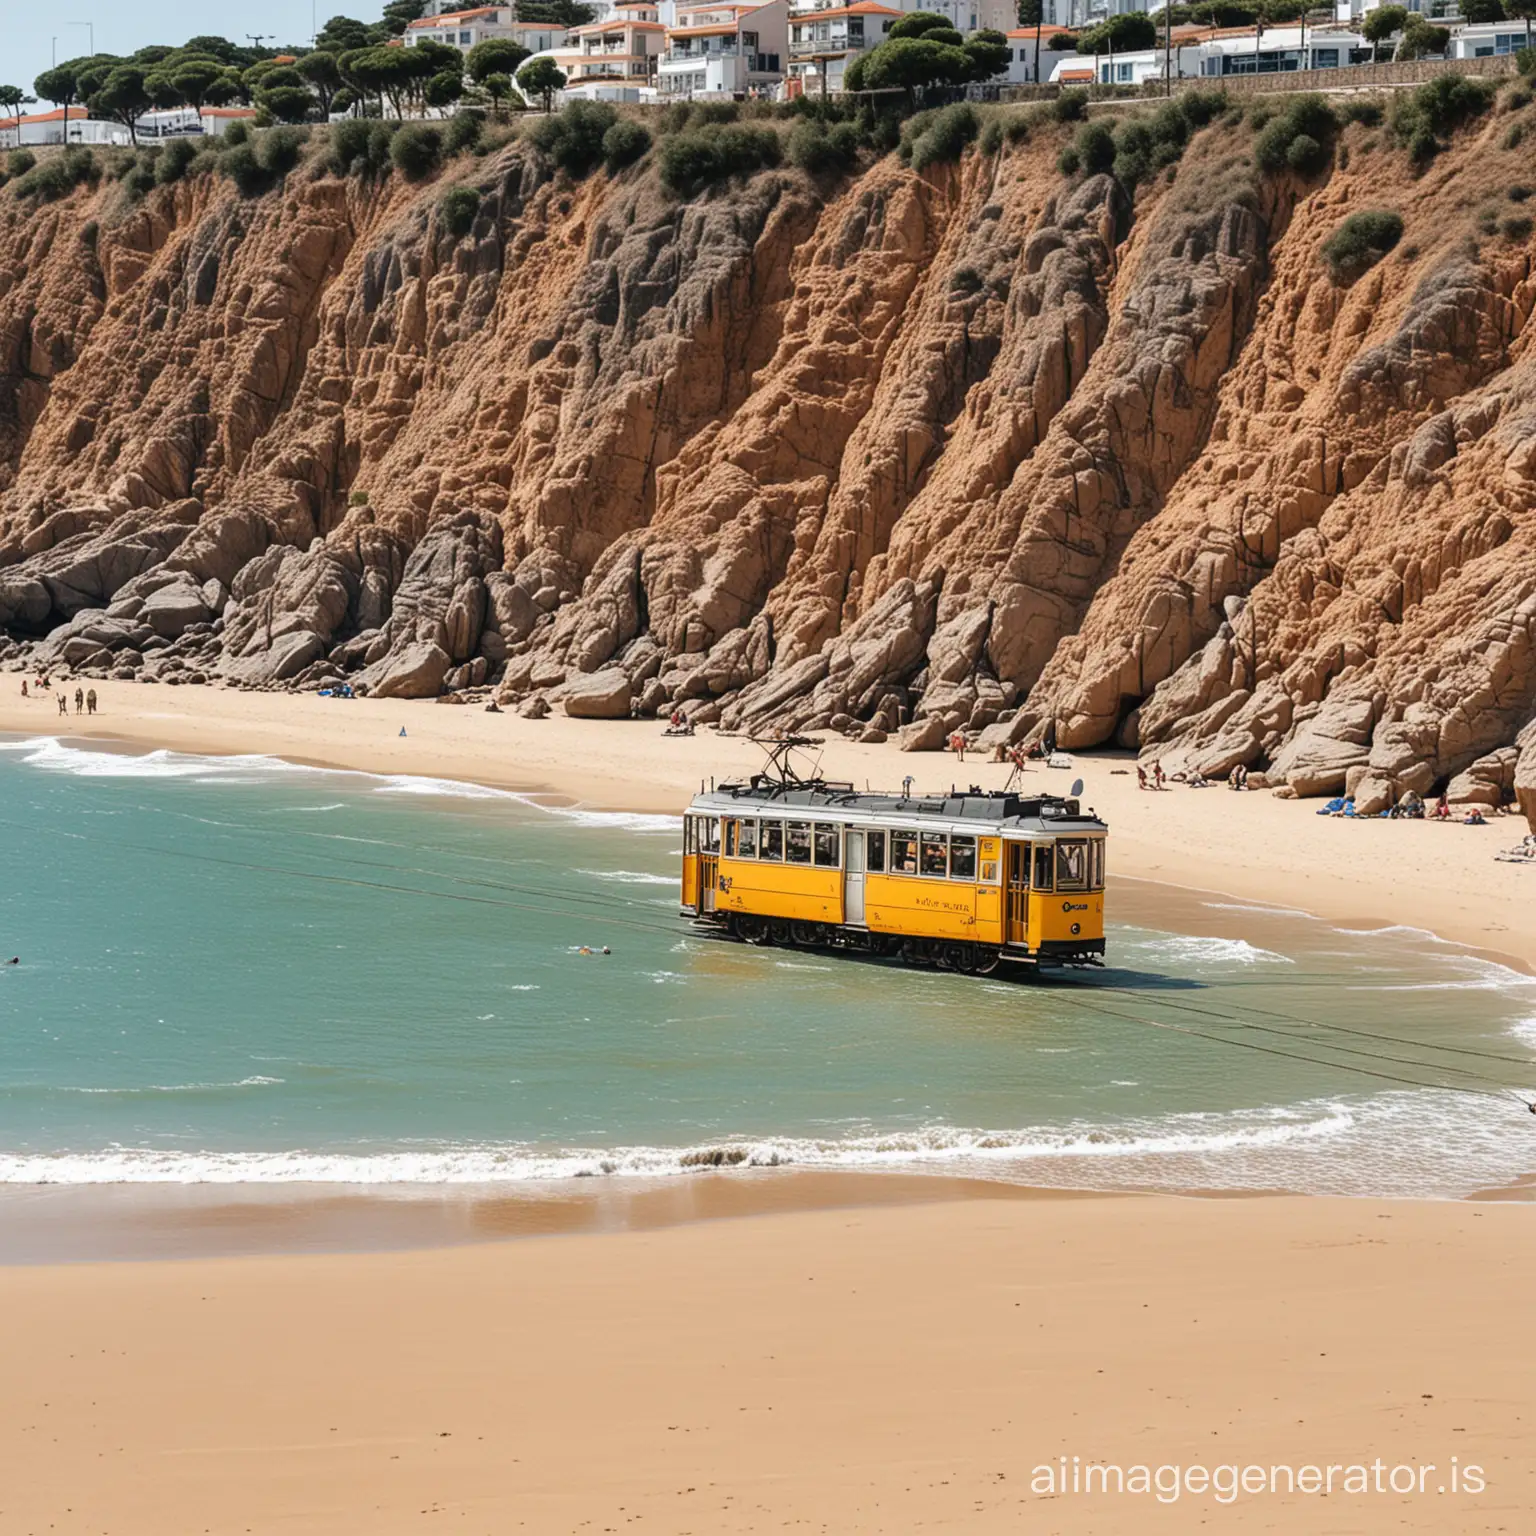 Um eléctrico português numa praia portuguesa